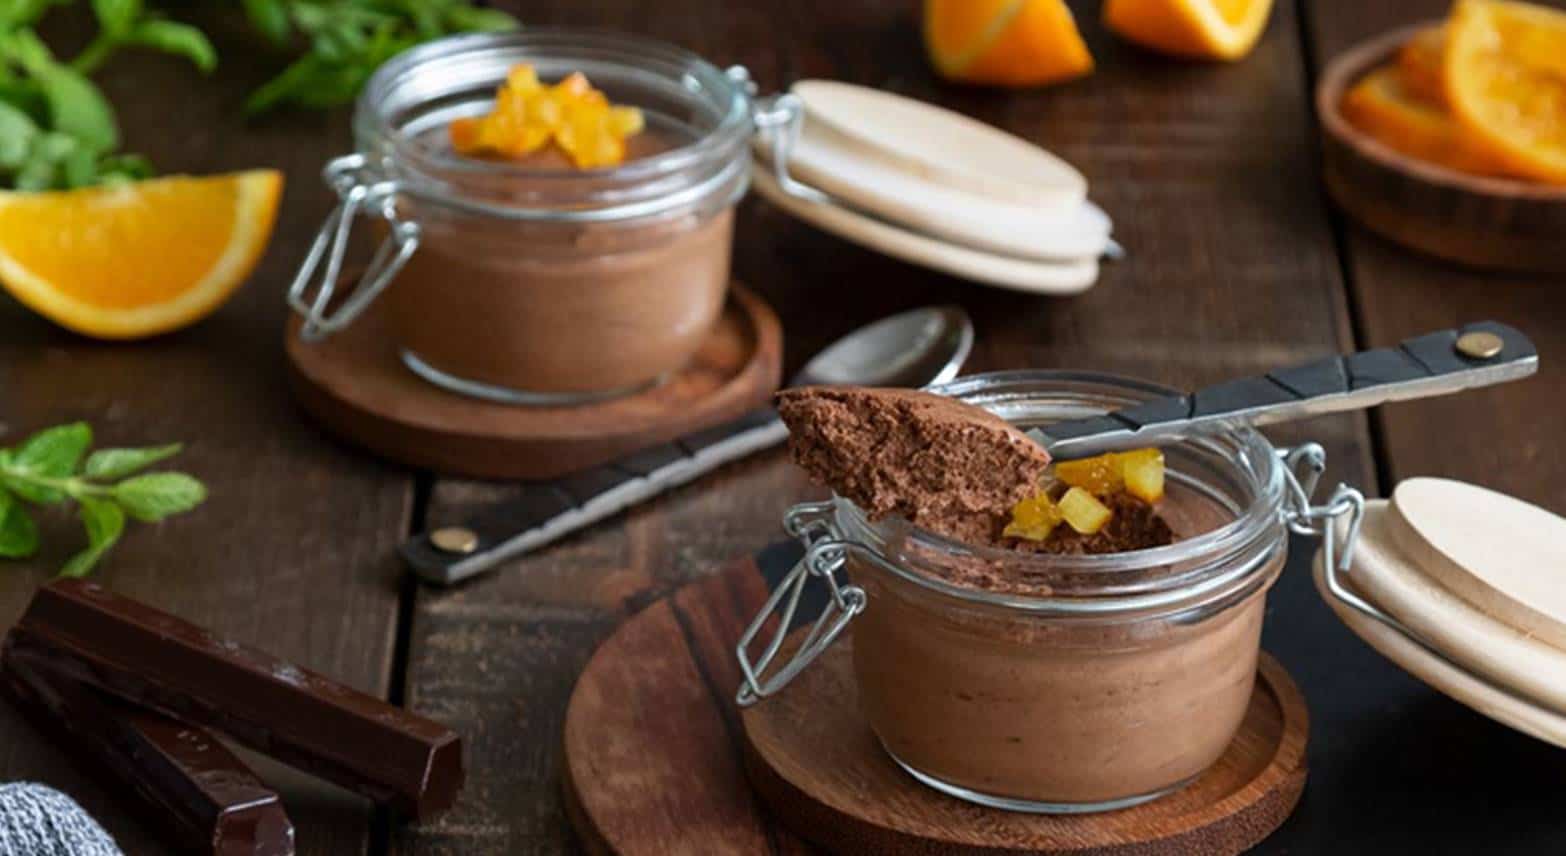 Mousse de chocolate com laranja: para quem quer algo doce, rápido e fácil